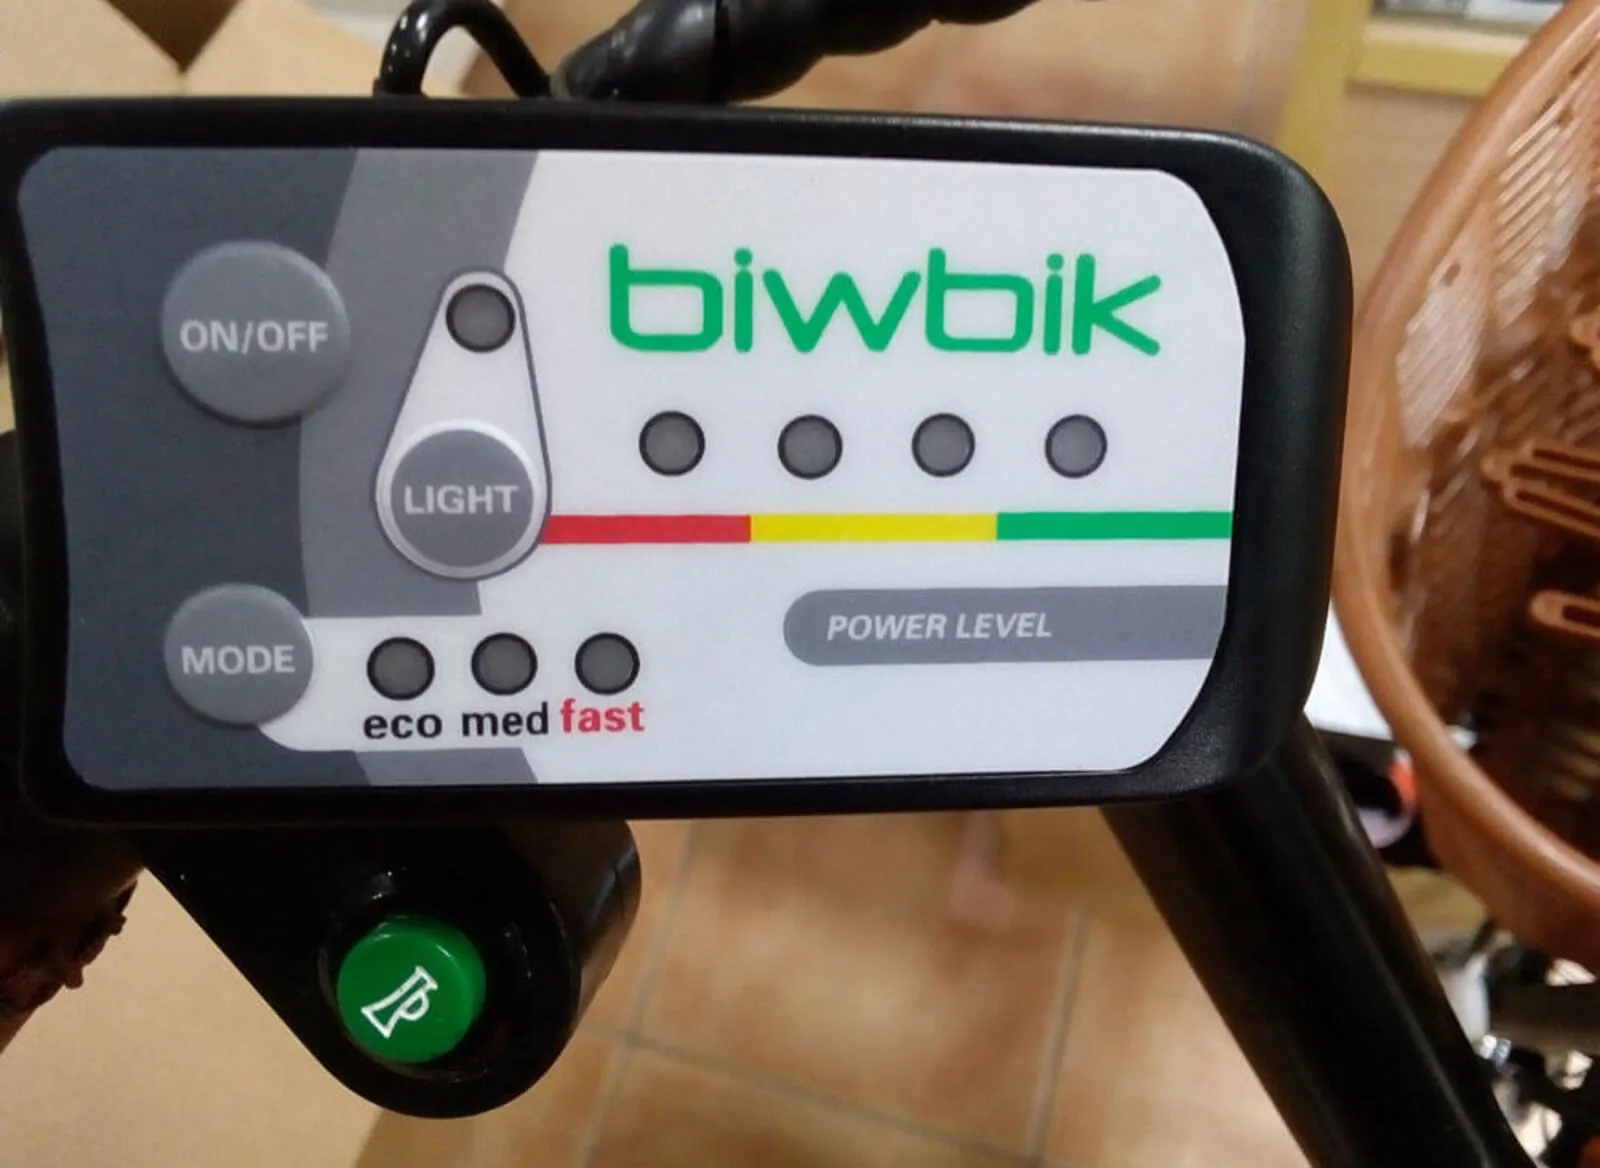 biwbik-speed-battery